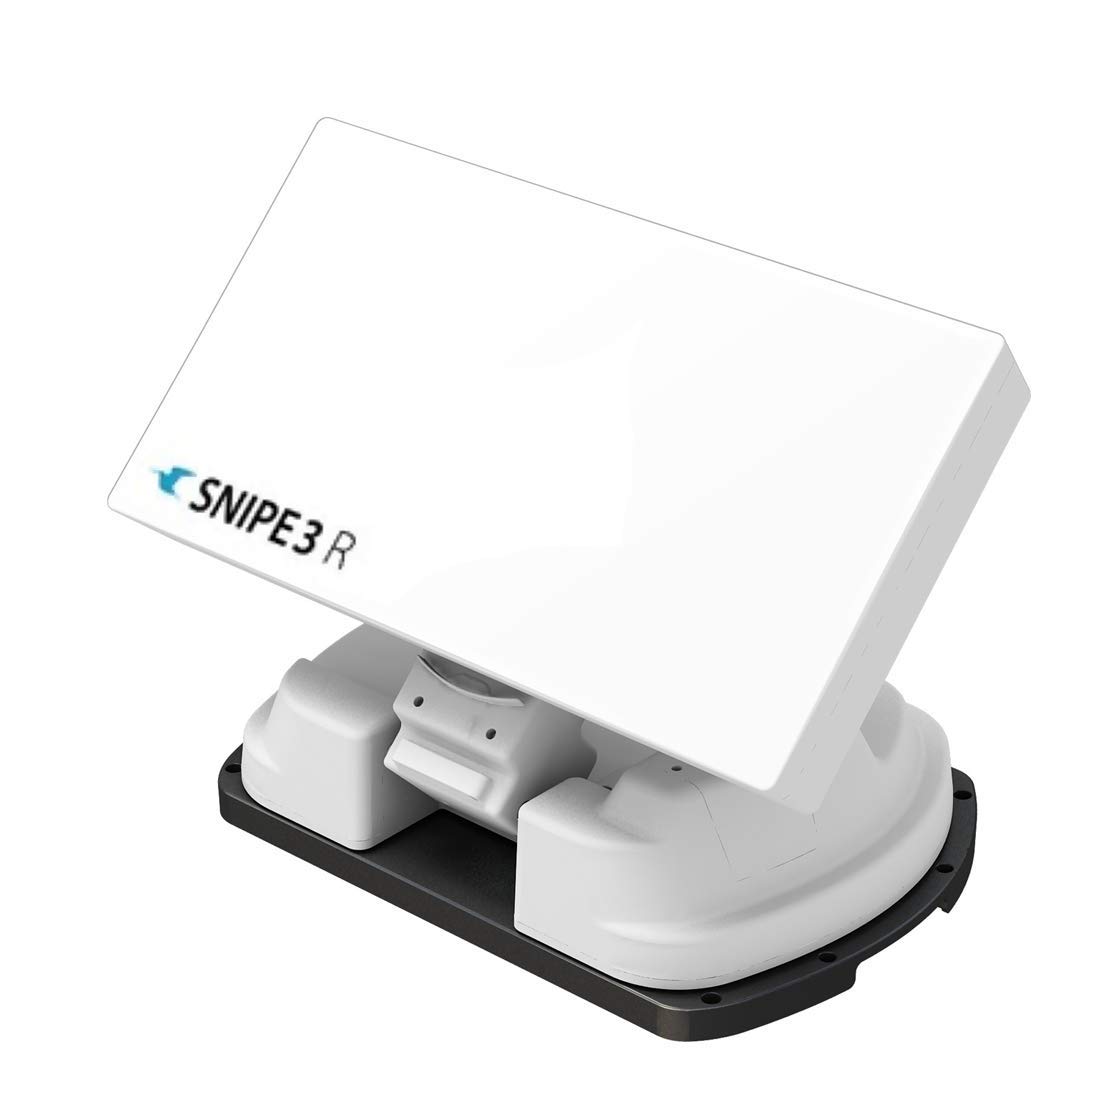 Selfsat Snipe 3 R Single mit Fernbedienung - GPS Vollautomatische Antenne Skew Sat System von SELFSAT